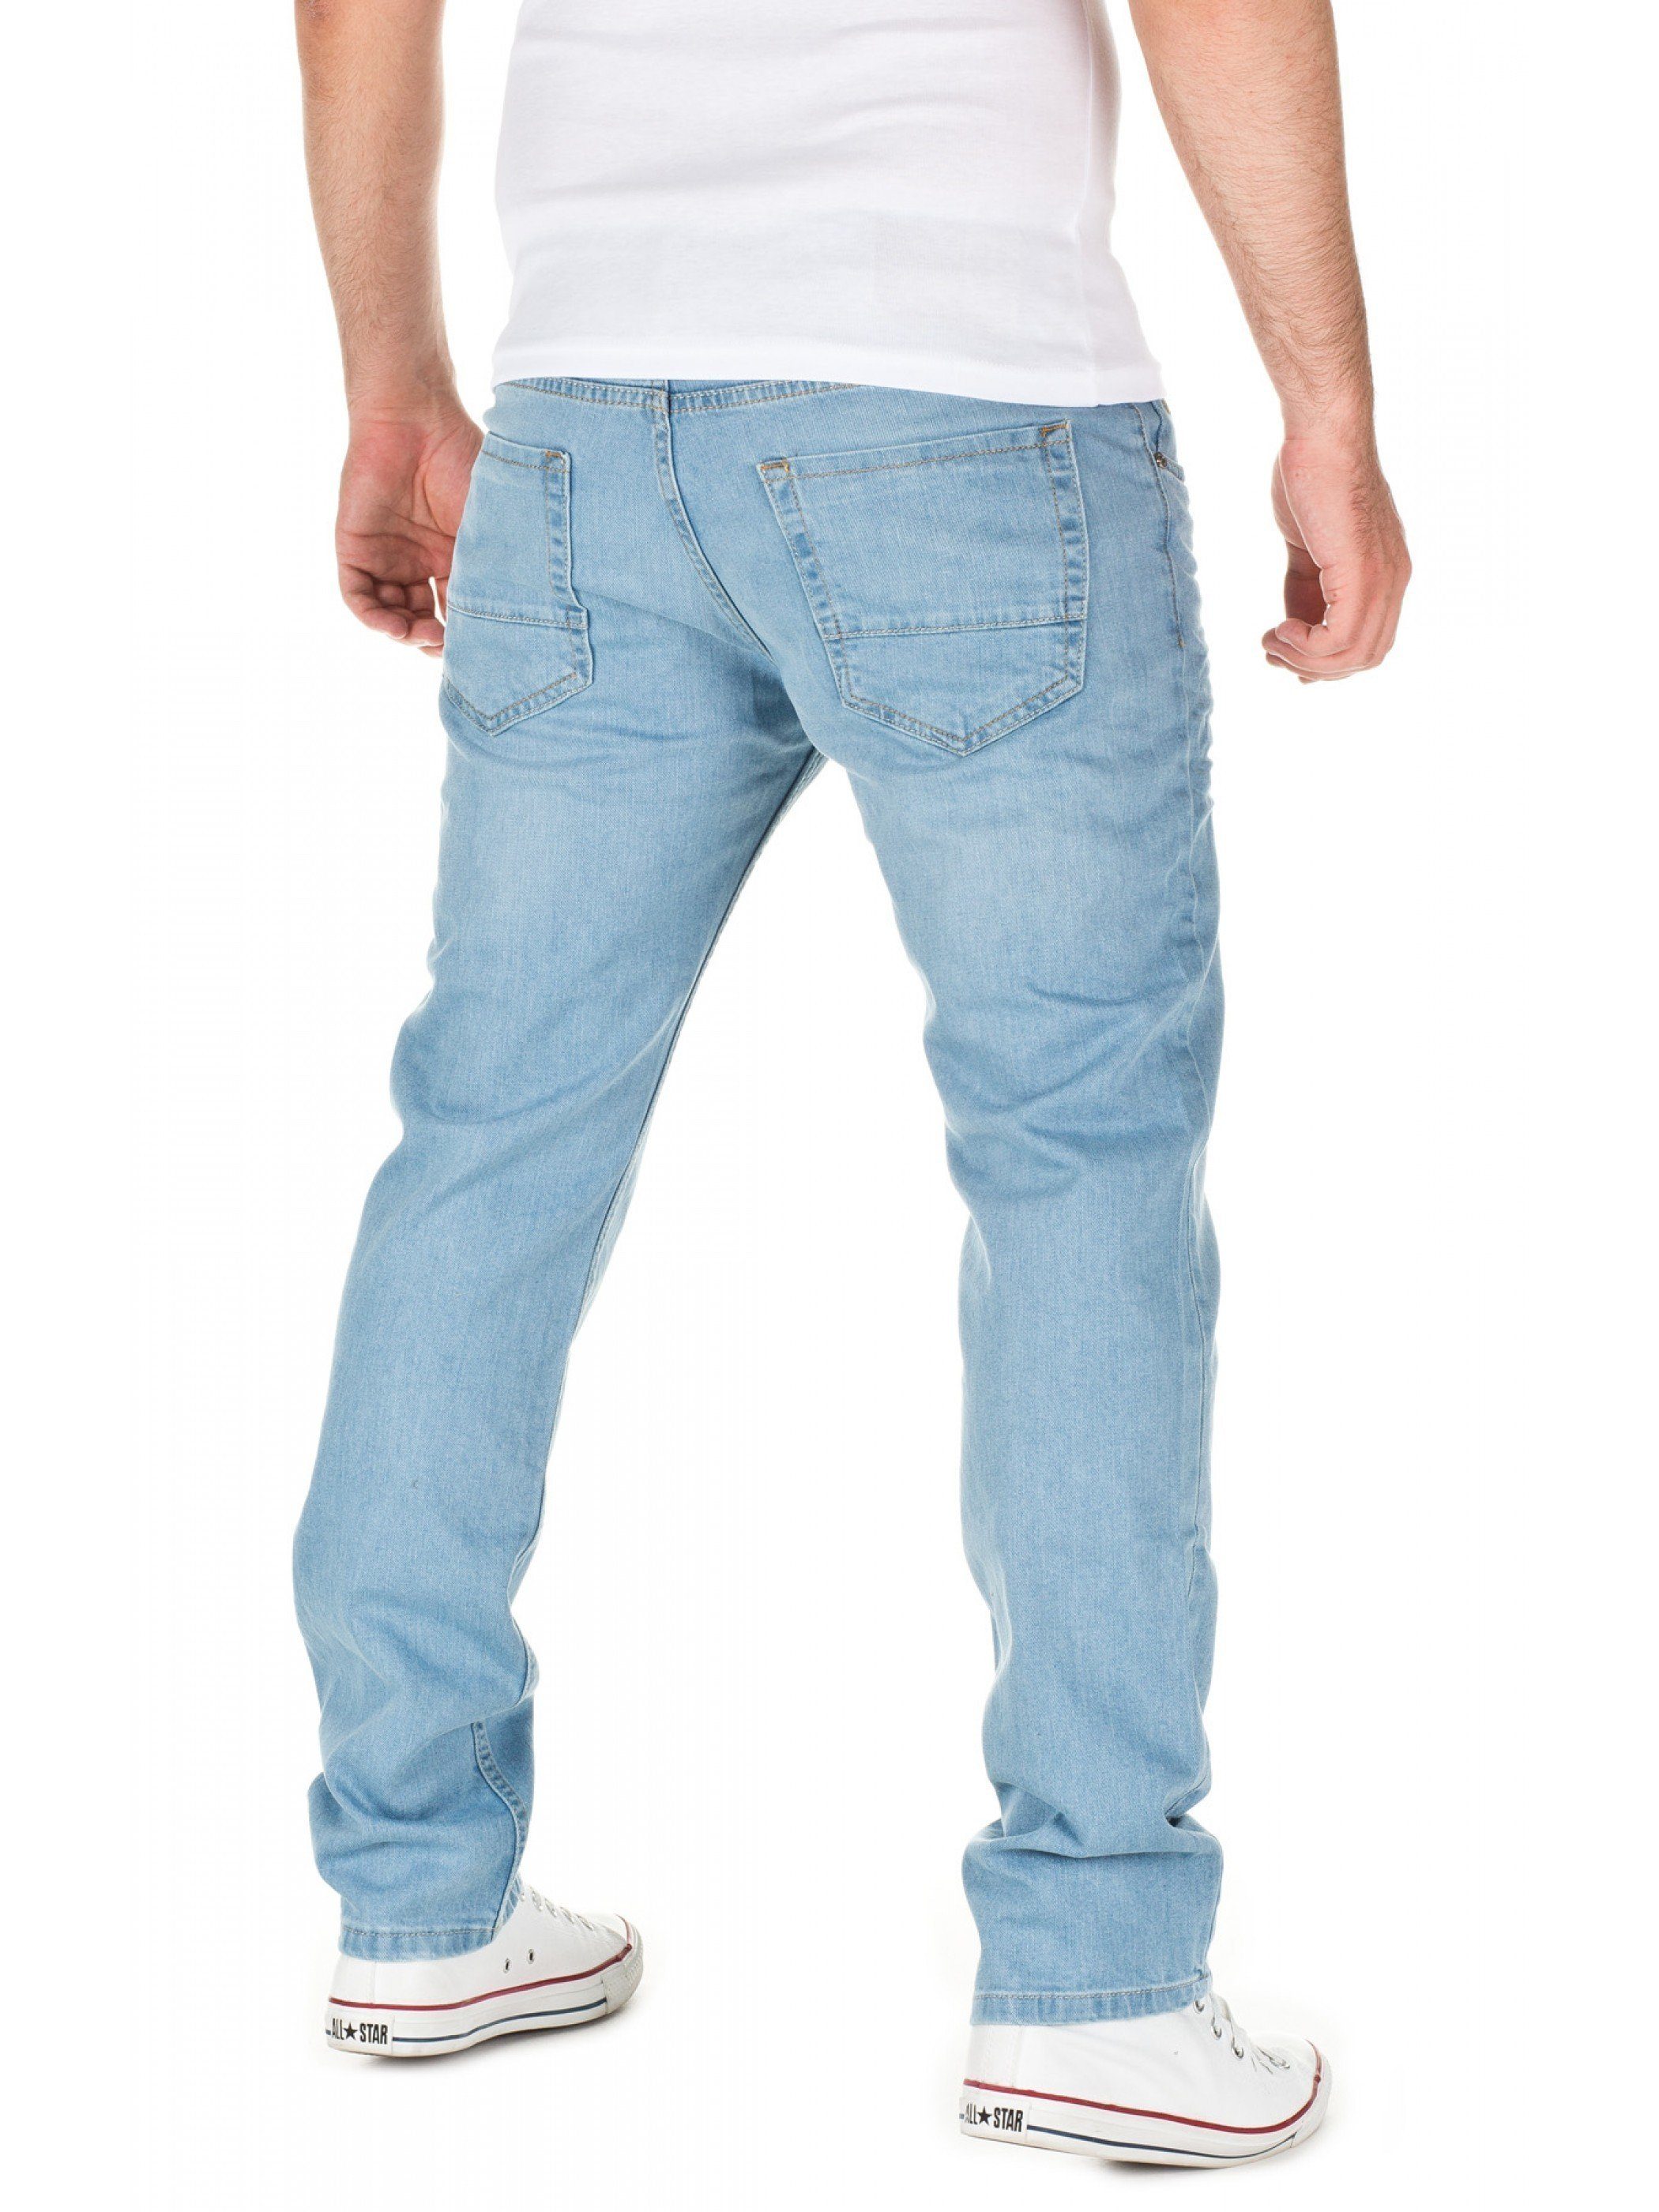 Jeans Blau WOTEGA Travis (blue 411) Slim-fit-Jeans denim